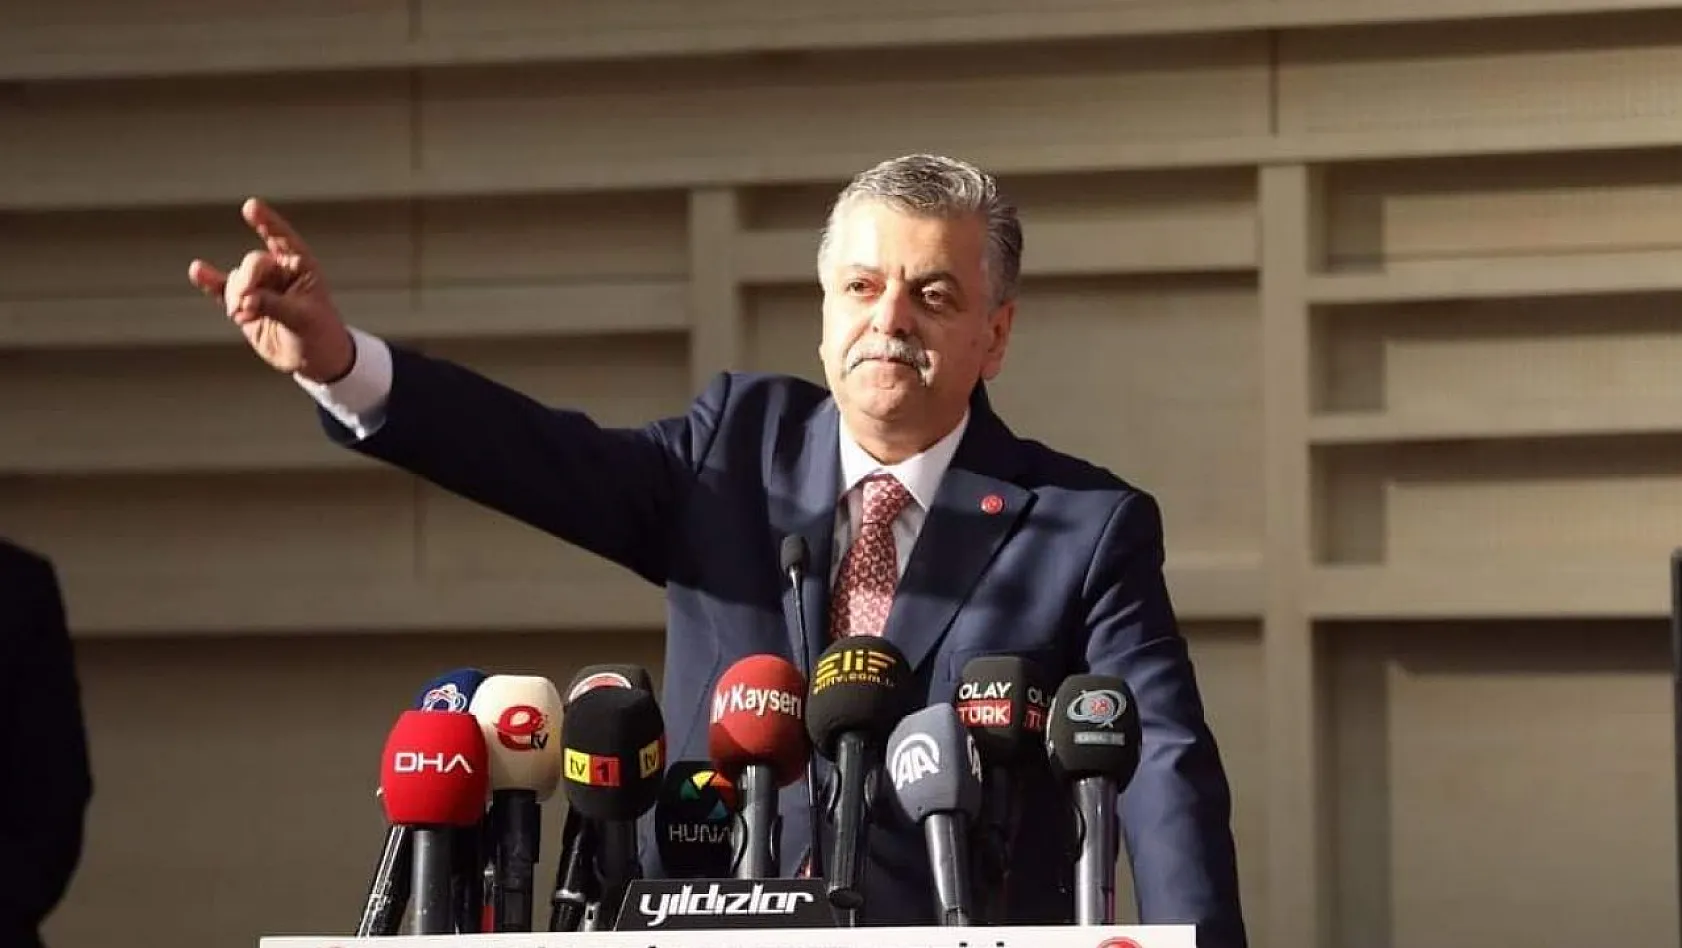 MHP'de Milletvekili adayı gösterilen İncetoprak'tan ilk açıklama